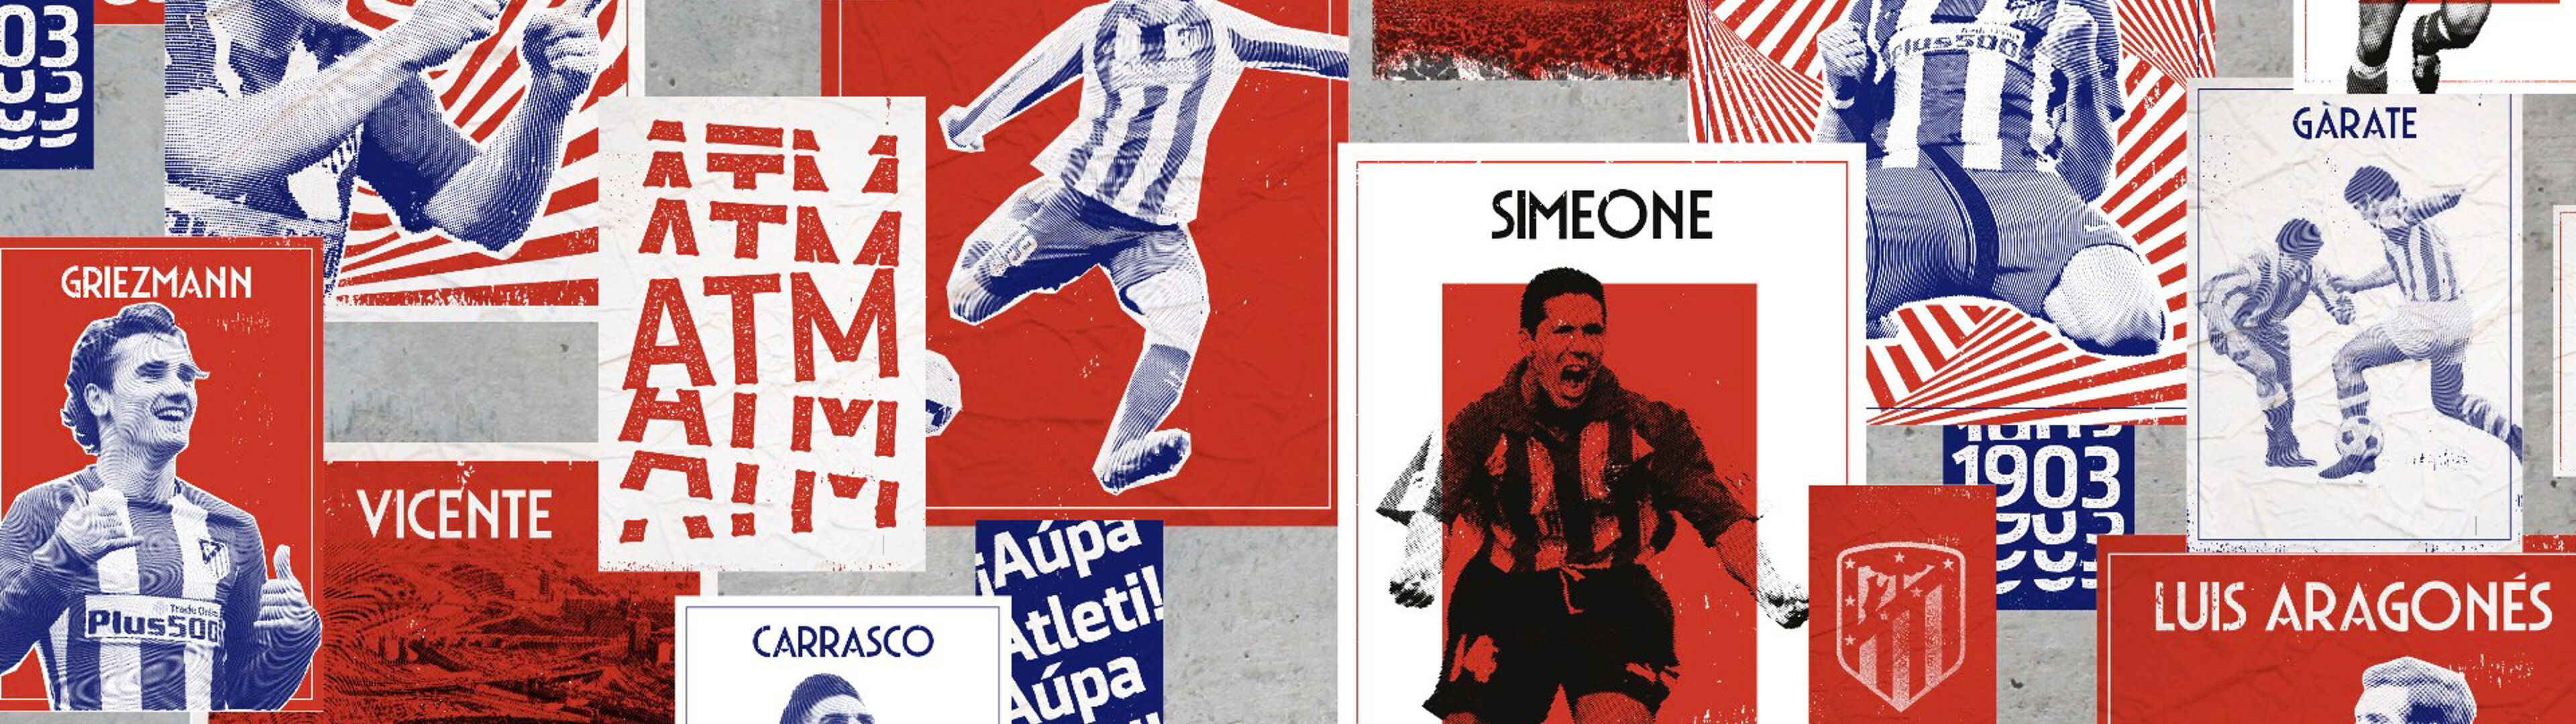 Montaje de imágenes e iconos representando al club de fútbol Atlético de Madrid, mostrando jugadores e historia del equipo.